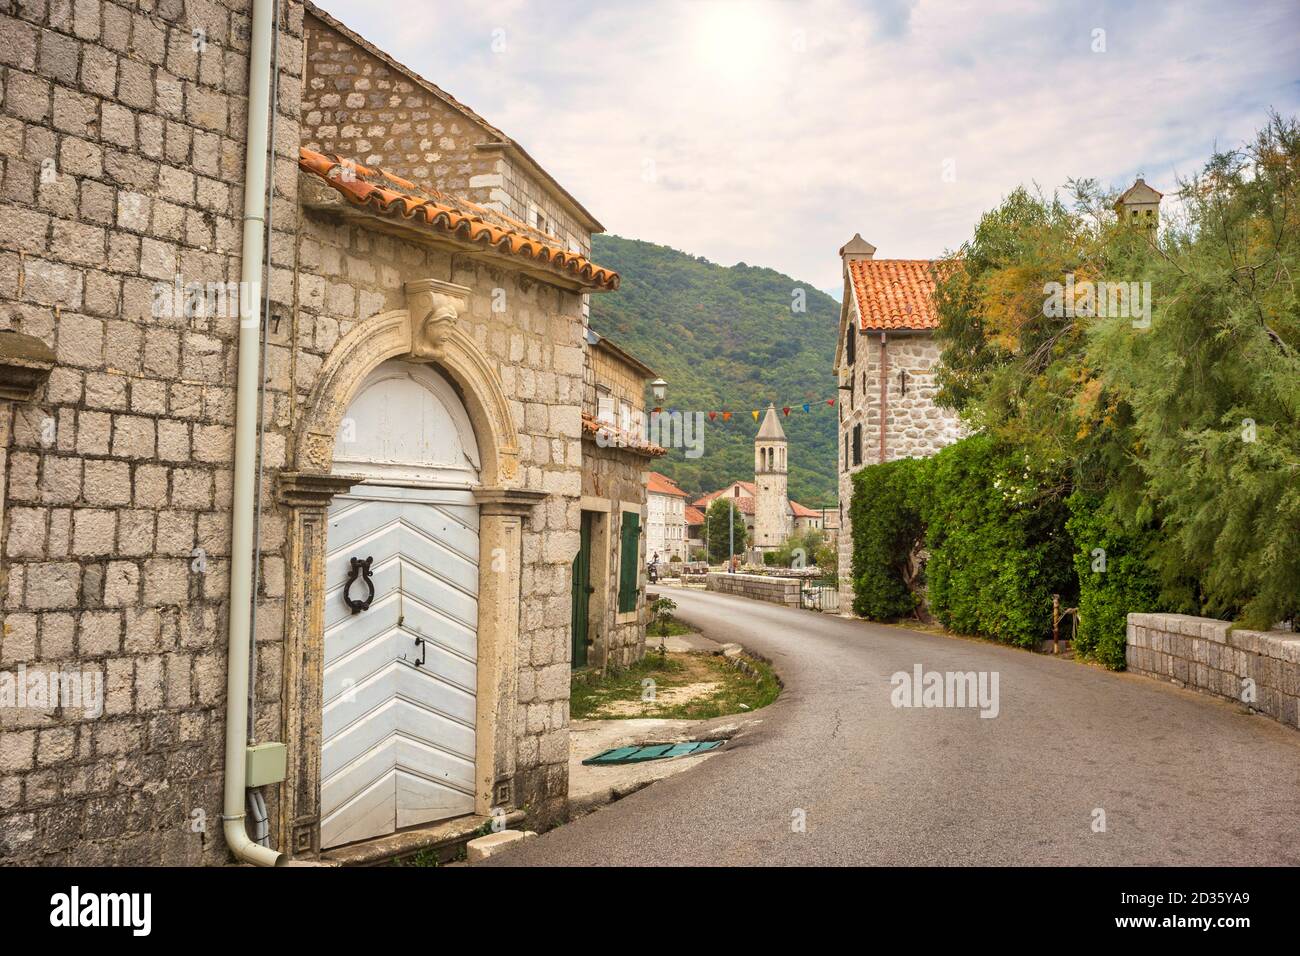 Antiguas casas de piedra mediterráneas tradicionales en la Bahía de Kotor (Boka Kotorska), Montenegro, Europa. Concepto de viaje, fondo. Foto de stock